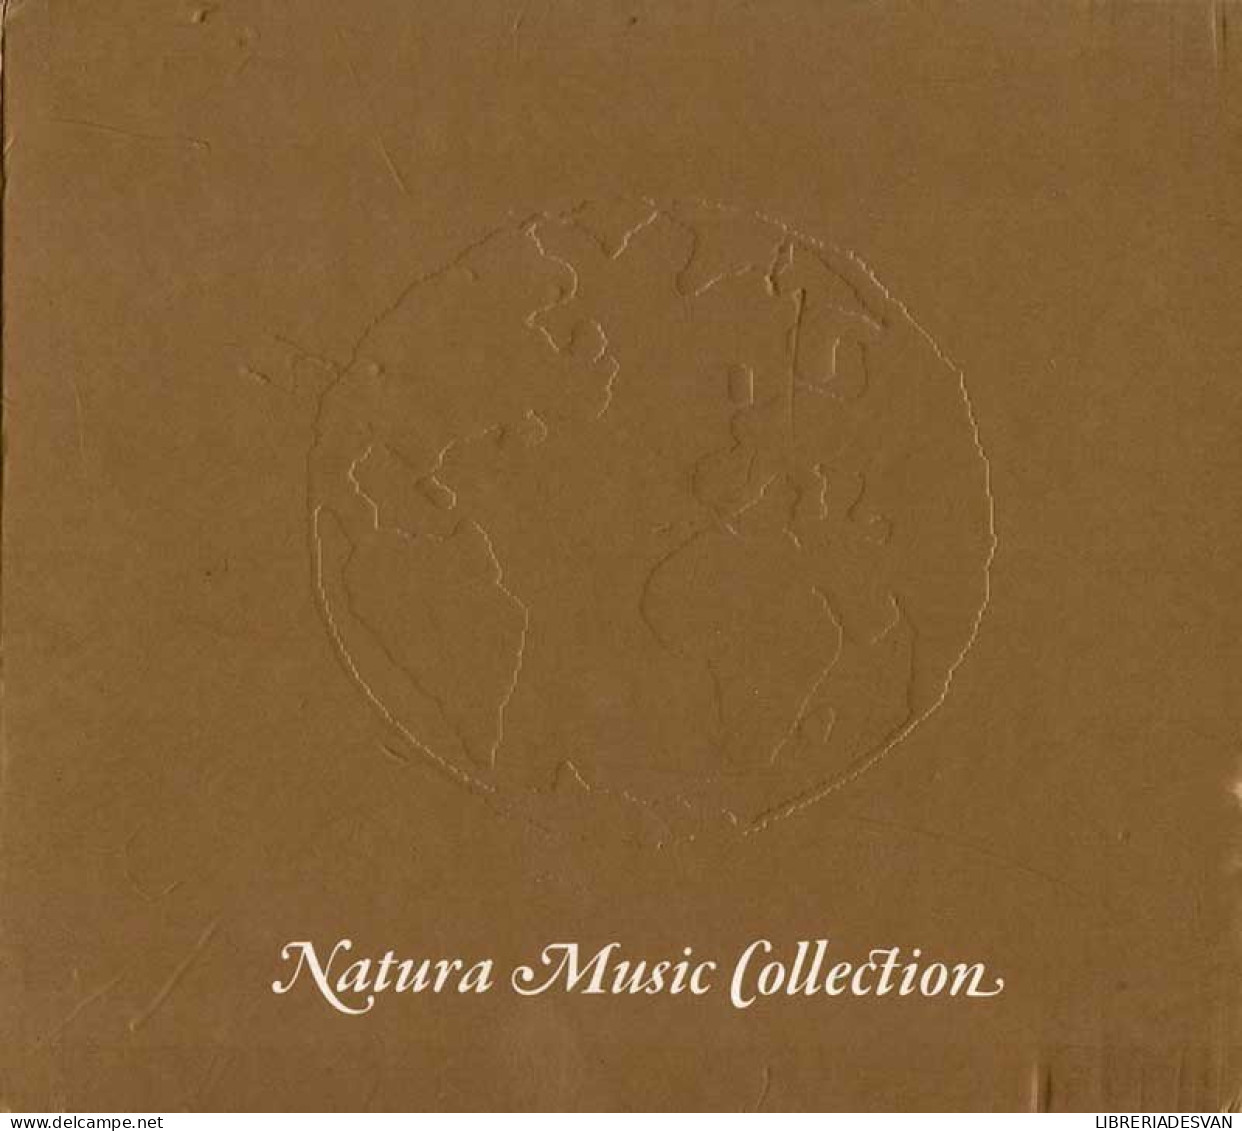 Natura Music Collection - Dorado. CD - New Age